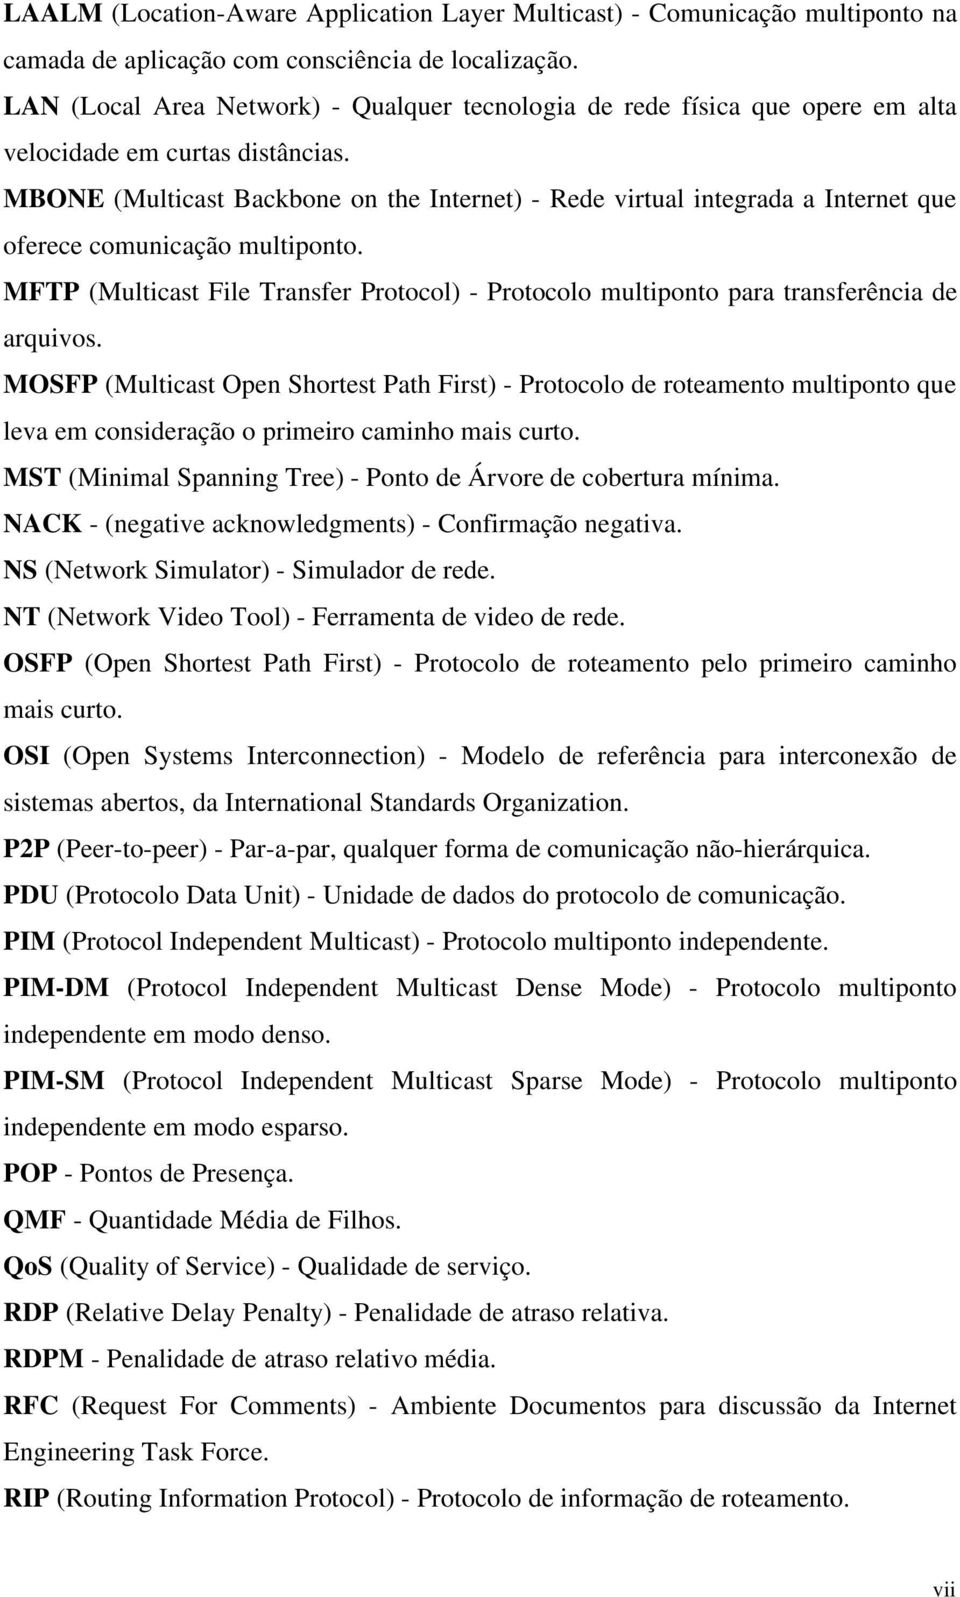 MBONE (Multicast Backbone on the Internet) - Rede virtual integrada a Internet que oferece comunicação multiponto.